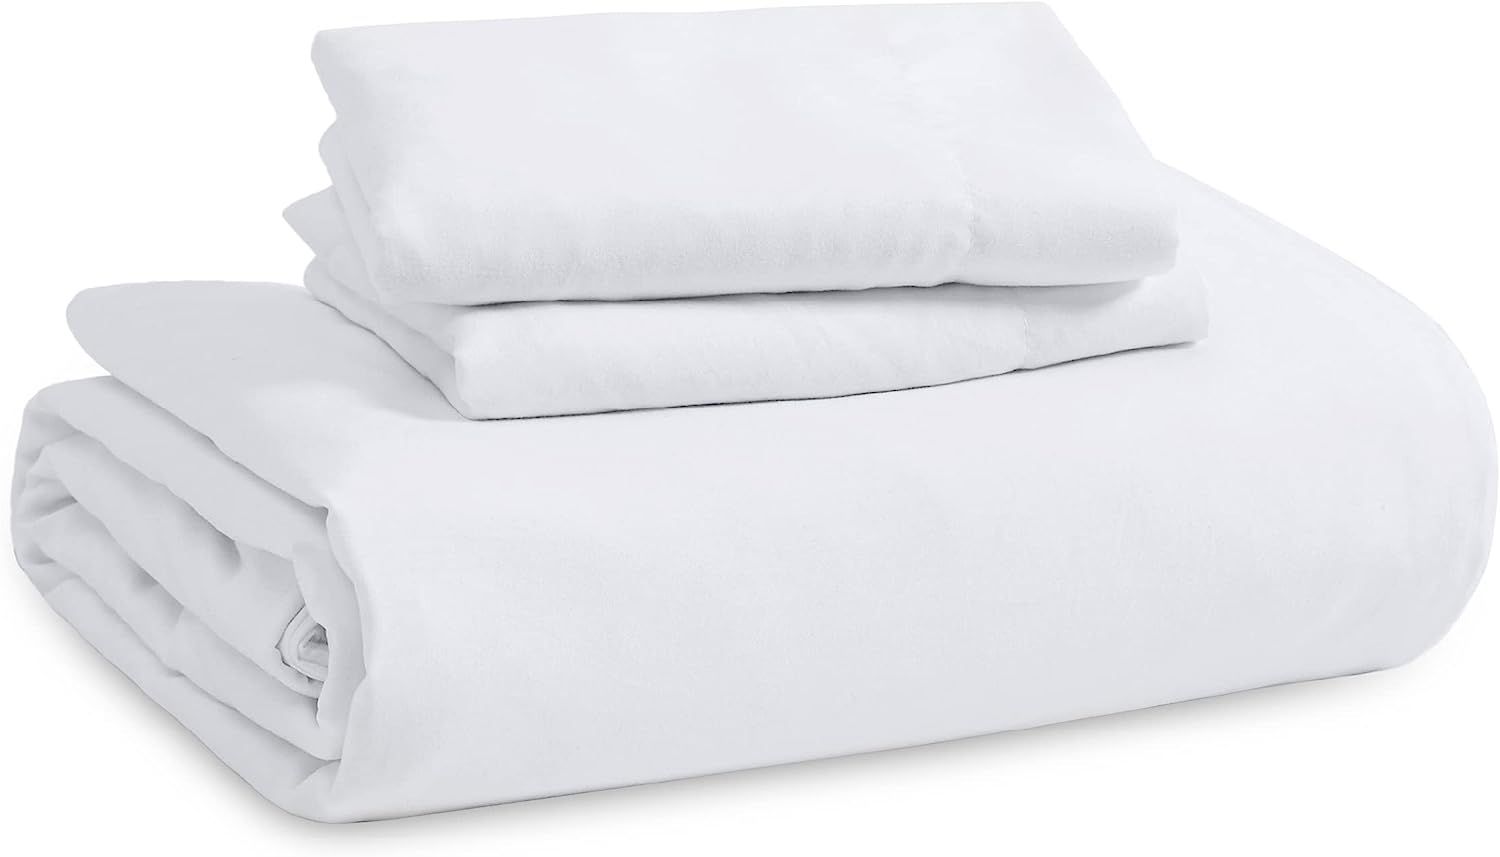 Bedsure White Duvet Cover Queen Size - Soft Prewashed Queen Duvet Cover Set, 3 Pieces, 1 Duvet Co... | Amazon (US)